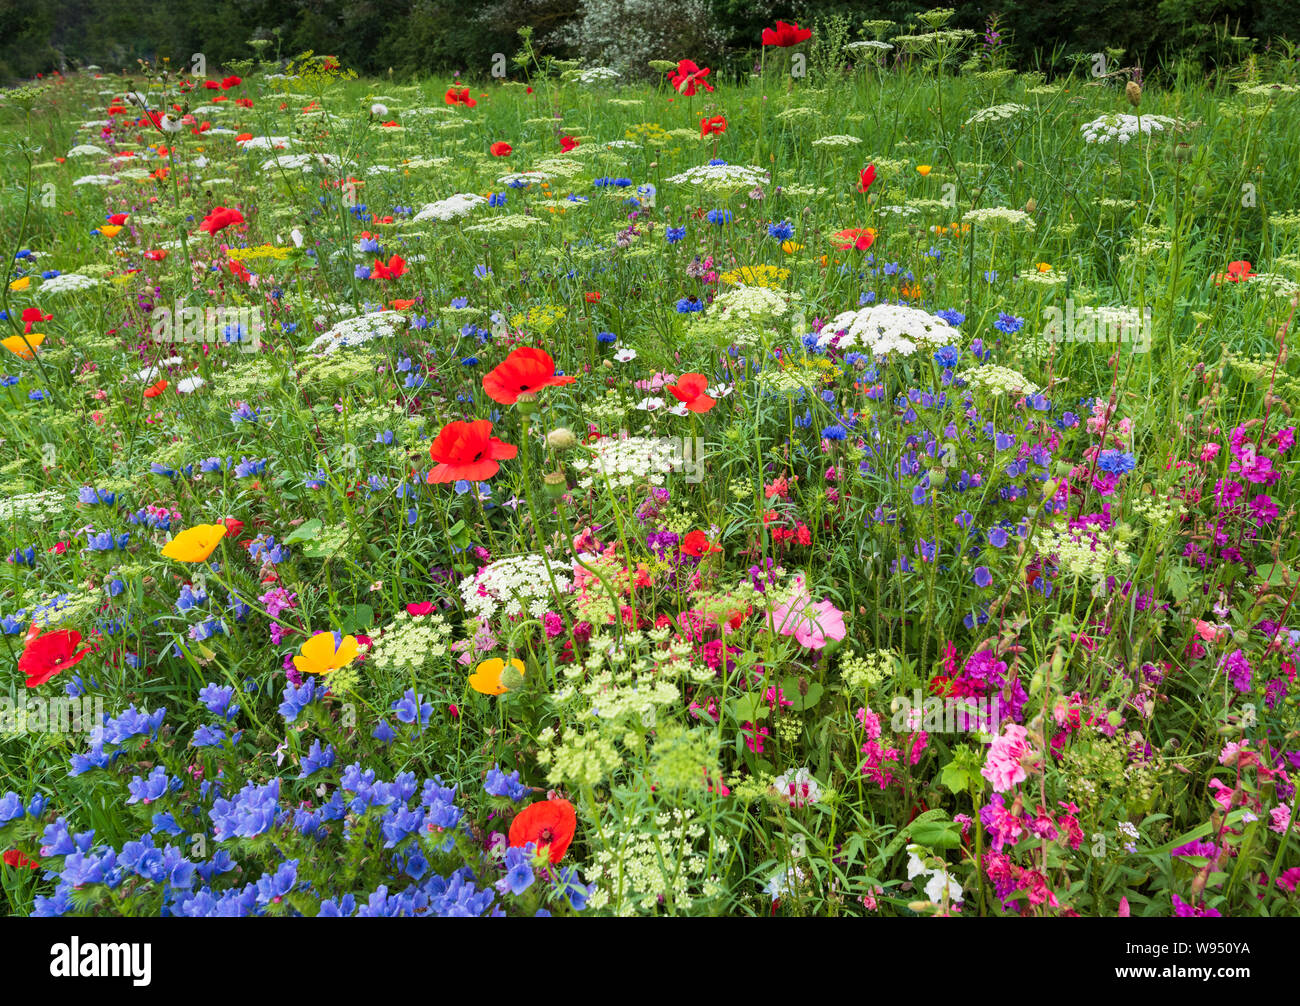 La nature à son plus colorés dans la campagne anglaise en été une profusion de fleurs éclatantes dans une prairie naturelle ensoleillée. Banque D'Images